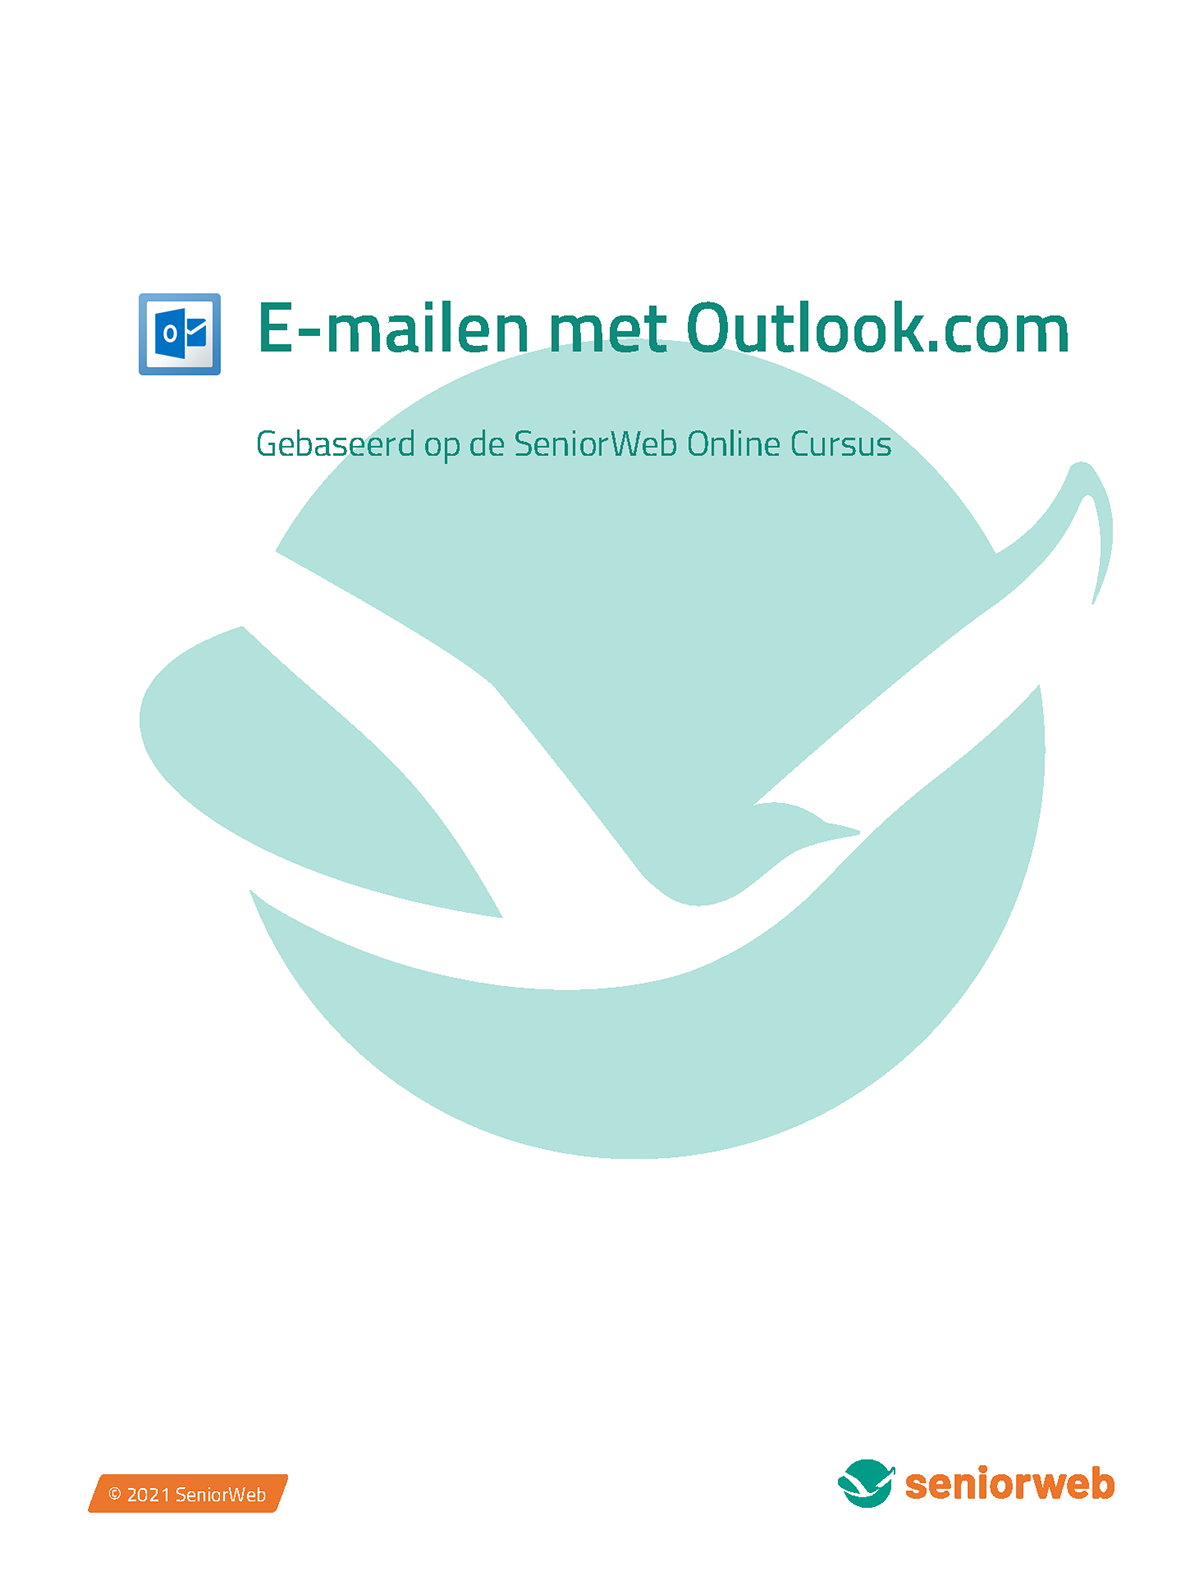 E-mailen met Outlook.com